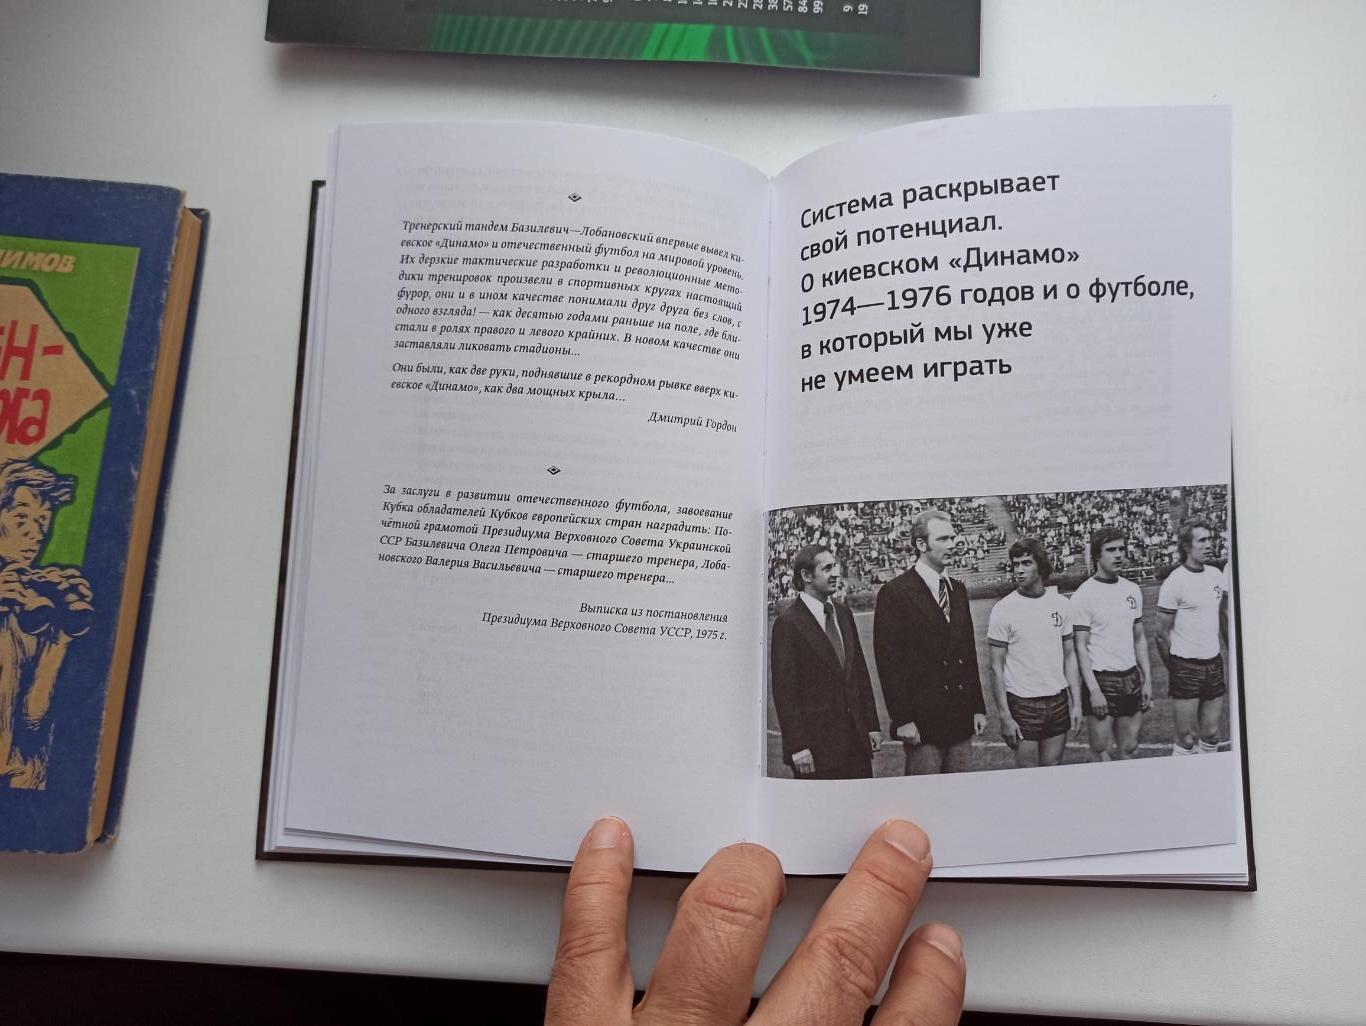 Олег Базилевич, Система, или размышления о футболе, Киев, 2013г., редкая книга 2